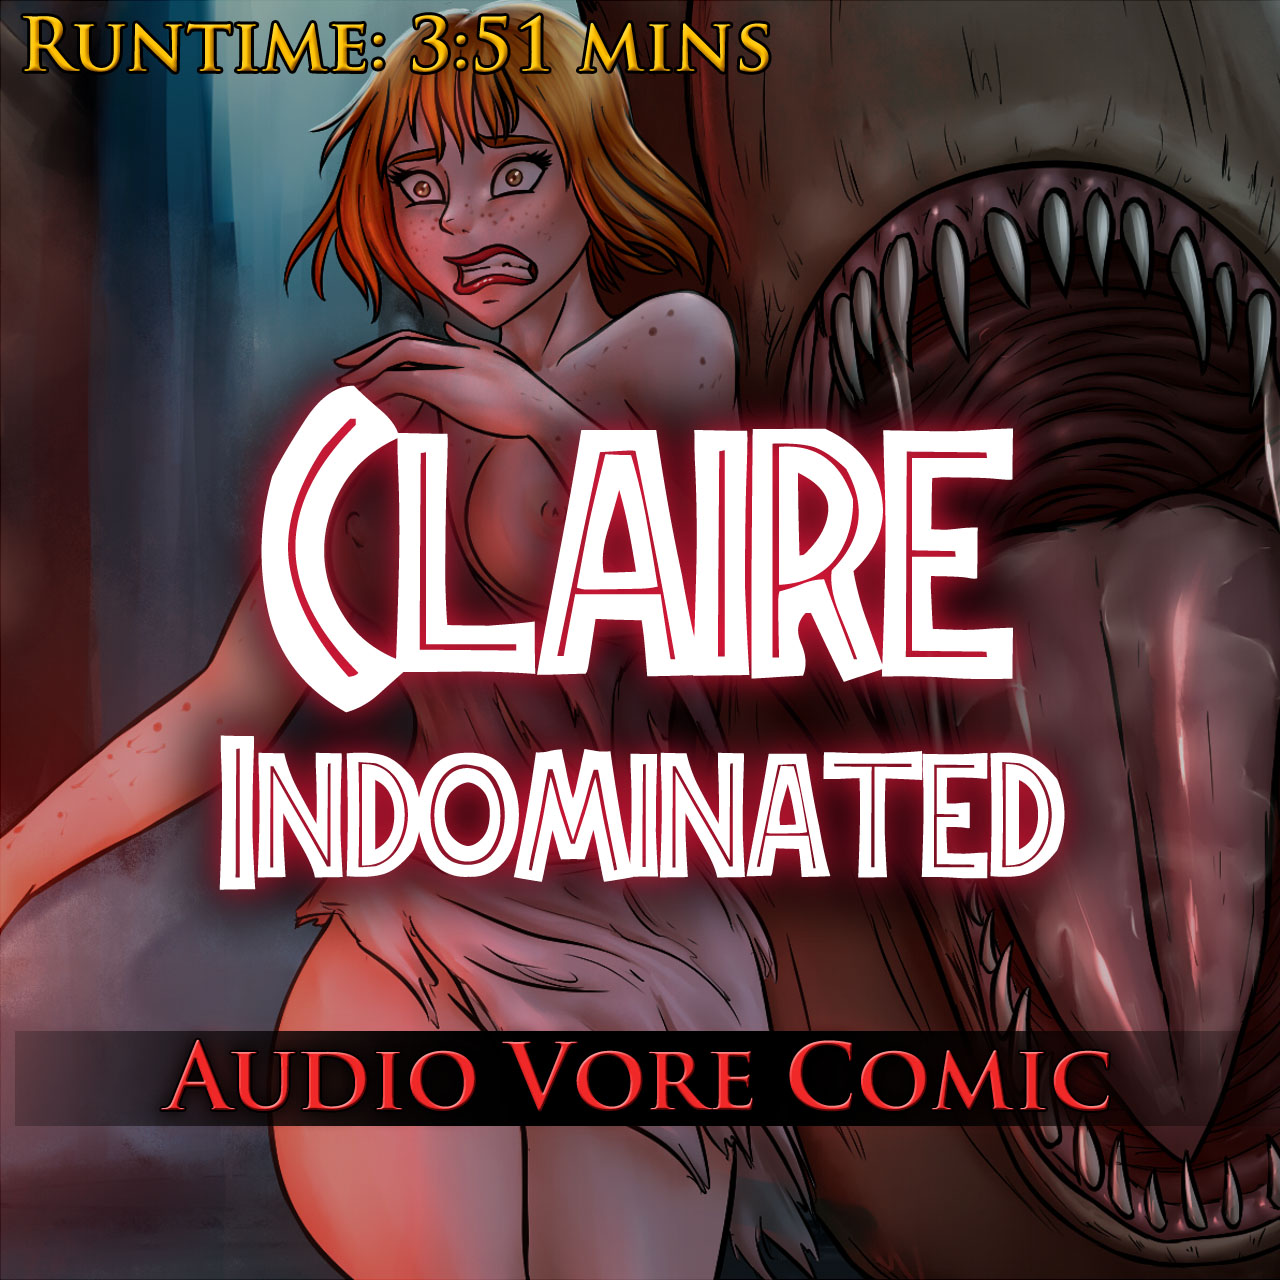 Claire Indominated - Audio Vore Comic